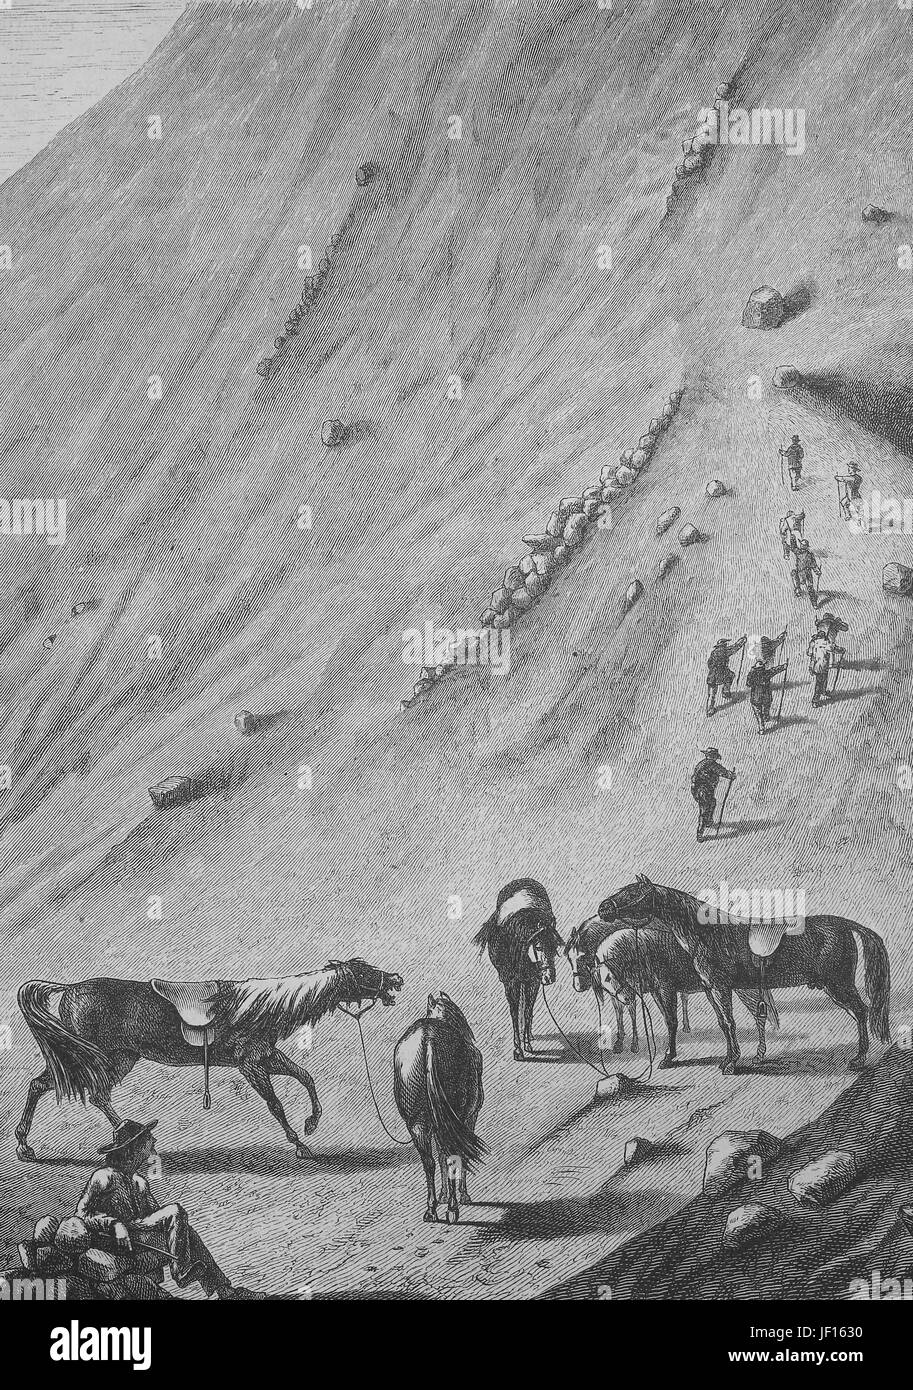 Historische Darstellung der letzten Pferd Station am Vulkan Vesuv, Neapel, Napoli, Italien, verbesserte digitale Reproduktion aus einer Originalgraphik von 1888 Stockfoto